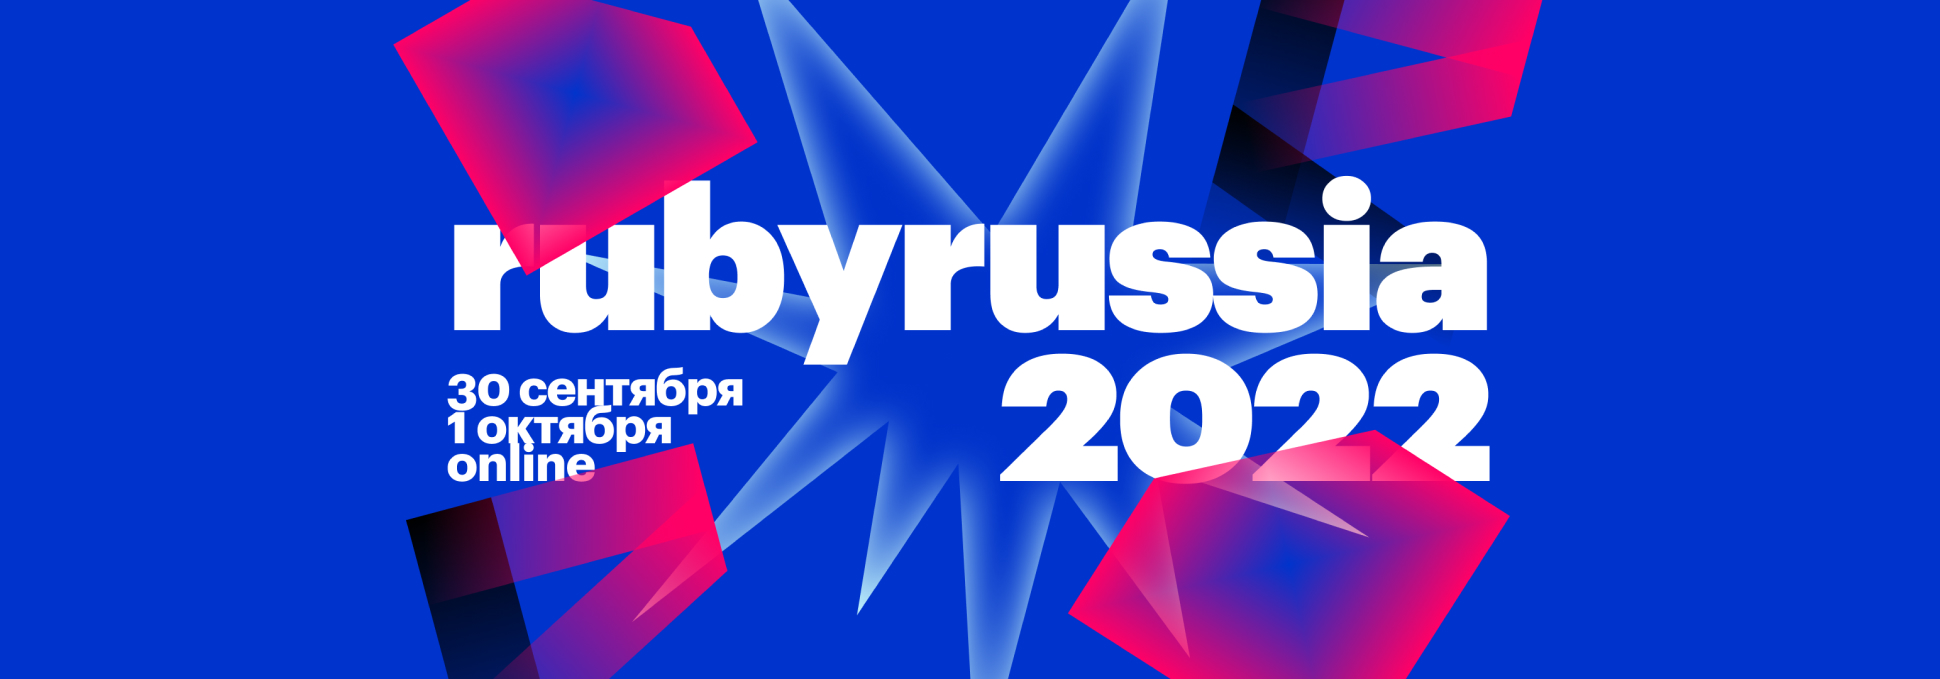 Конференция RubyRussia 2022